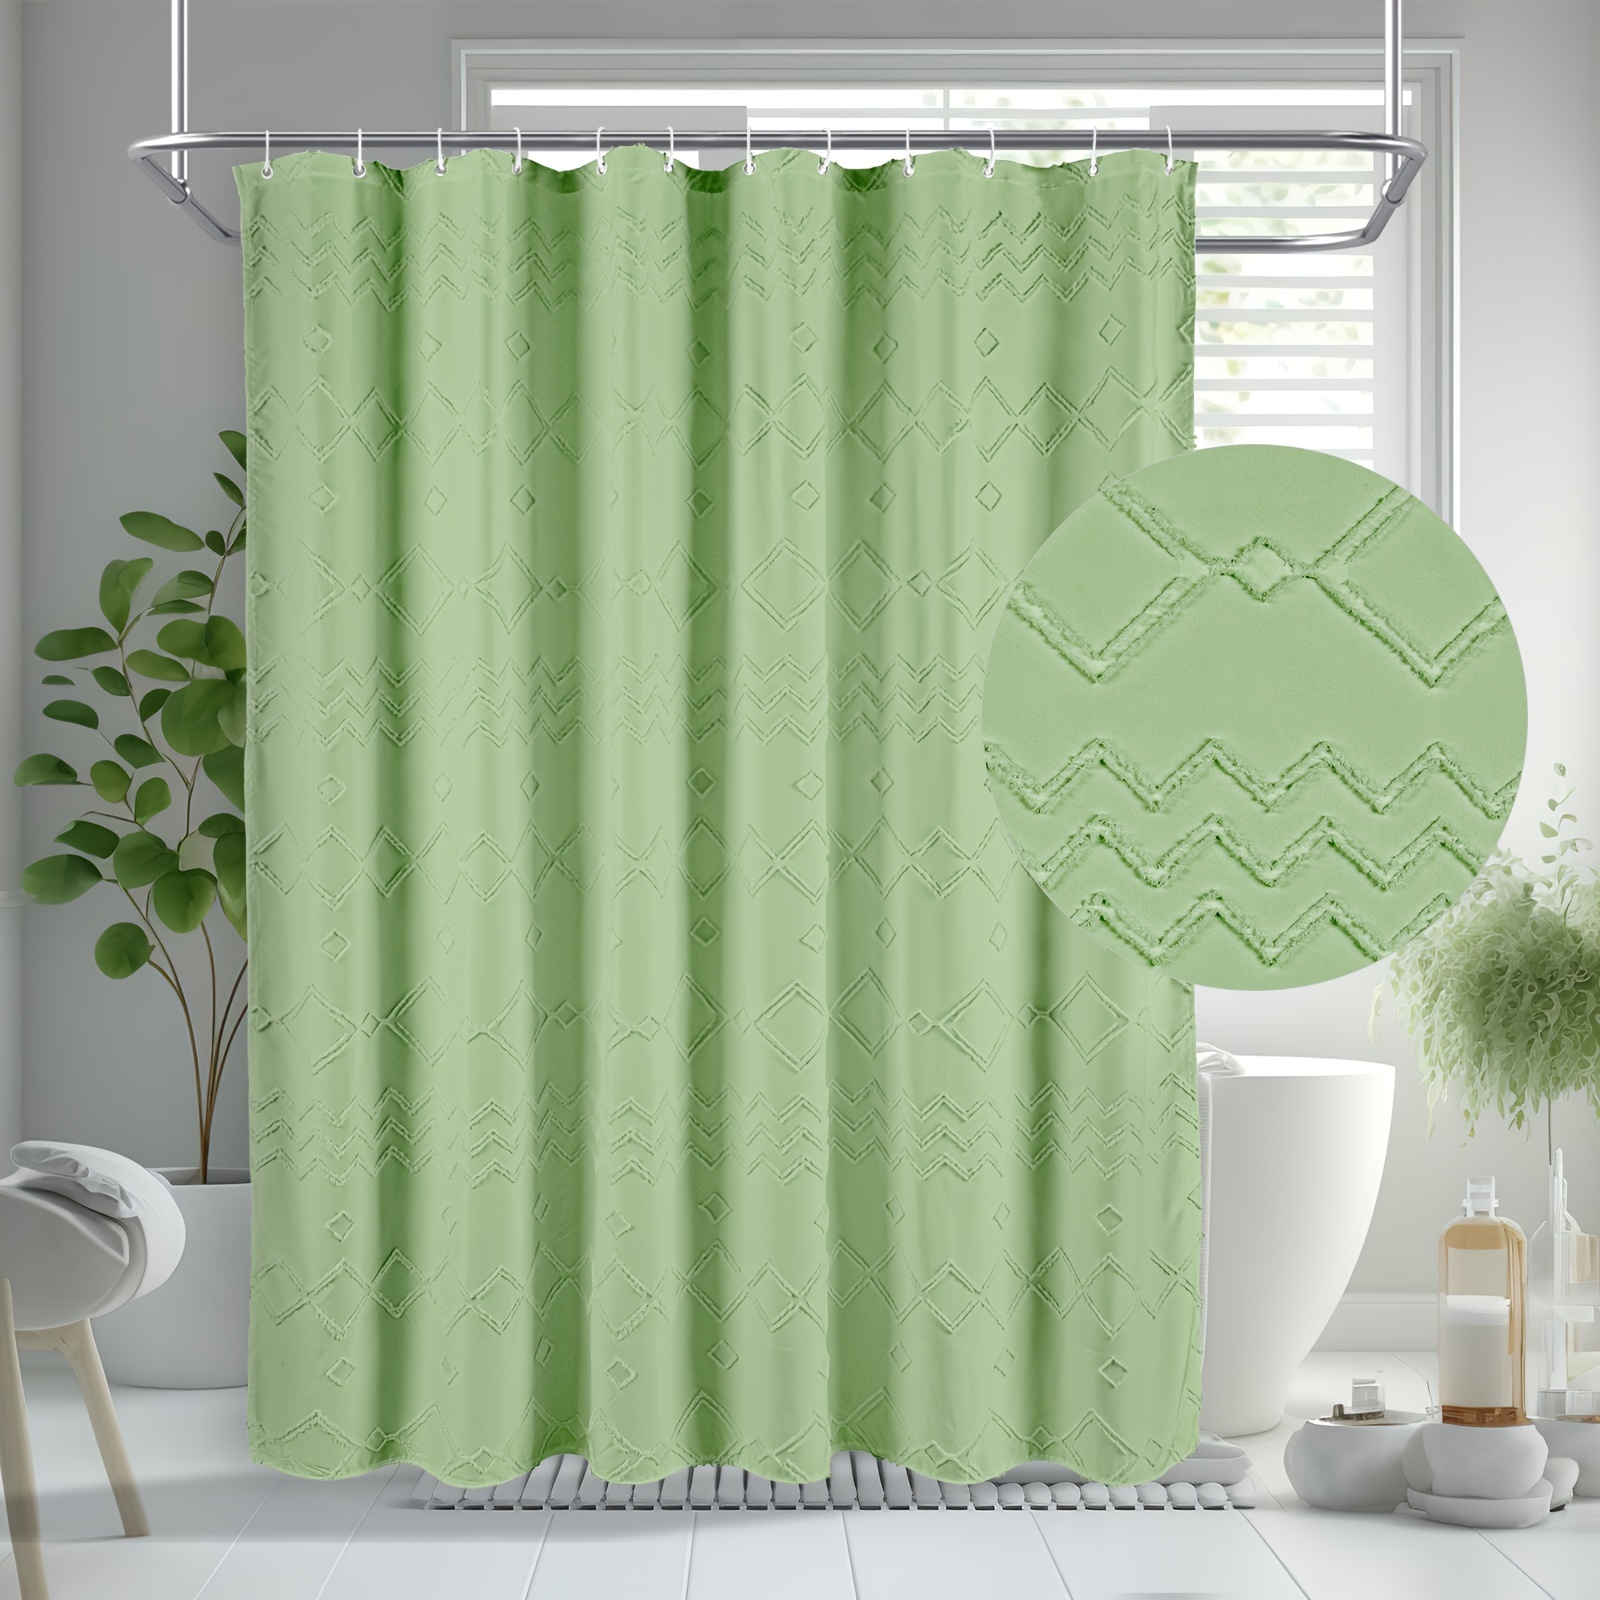 Cortina de ducha gris y blanca para baño, cortina de ducha de tela con  forro incluido, lujo y calidad de hotel, paño lavable de 72 x 72 pulgadas  para